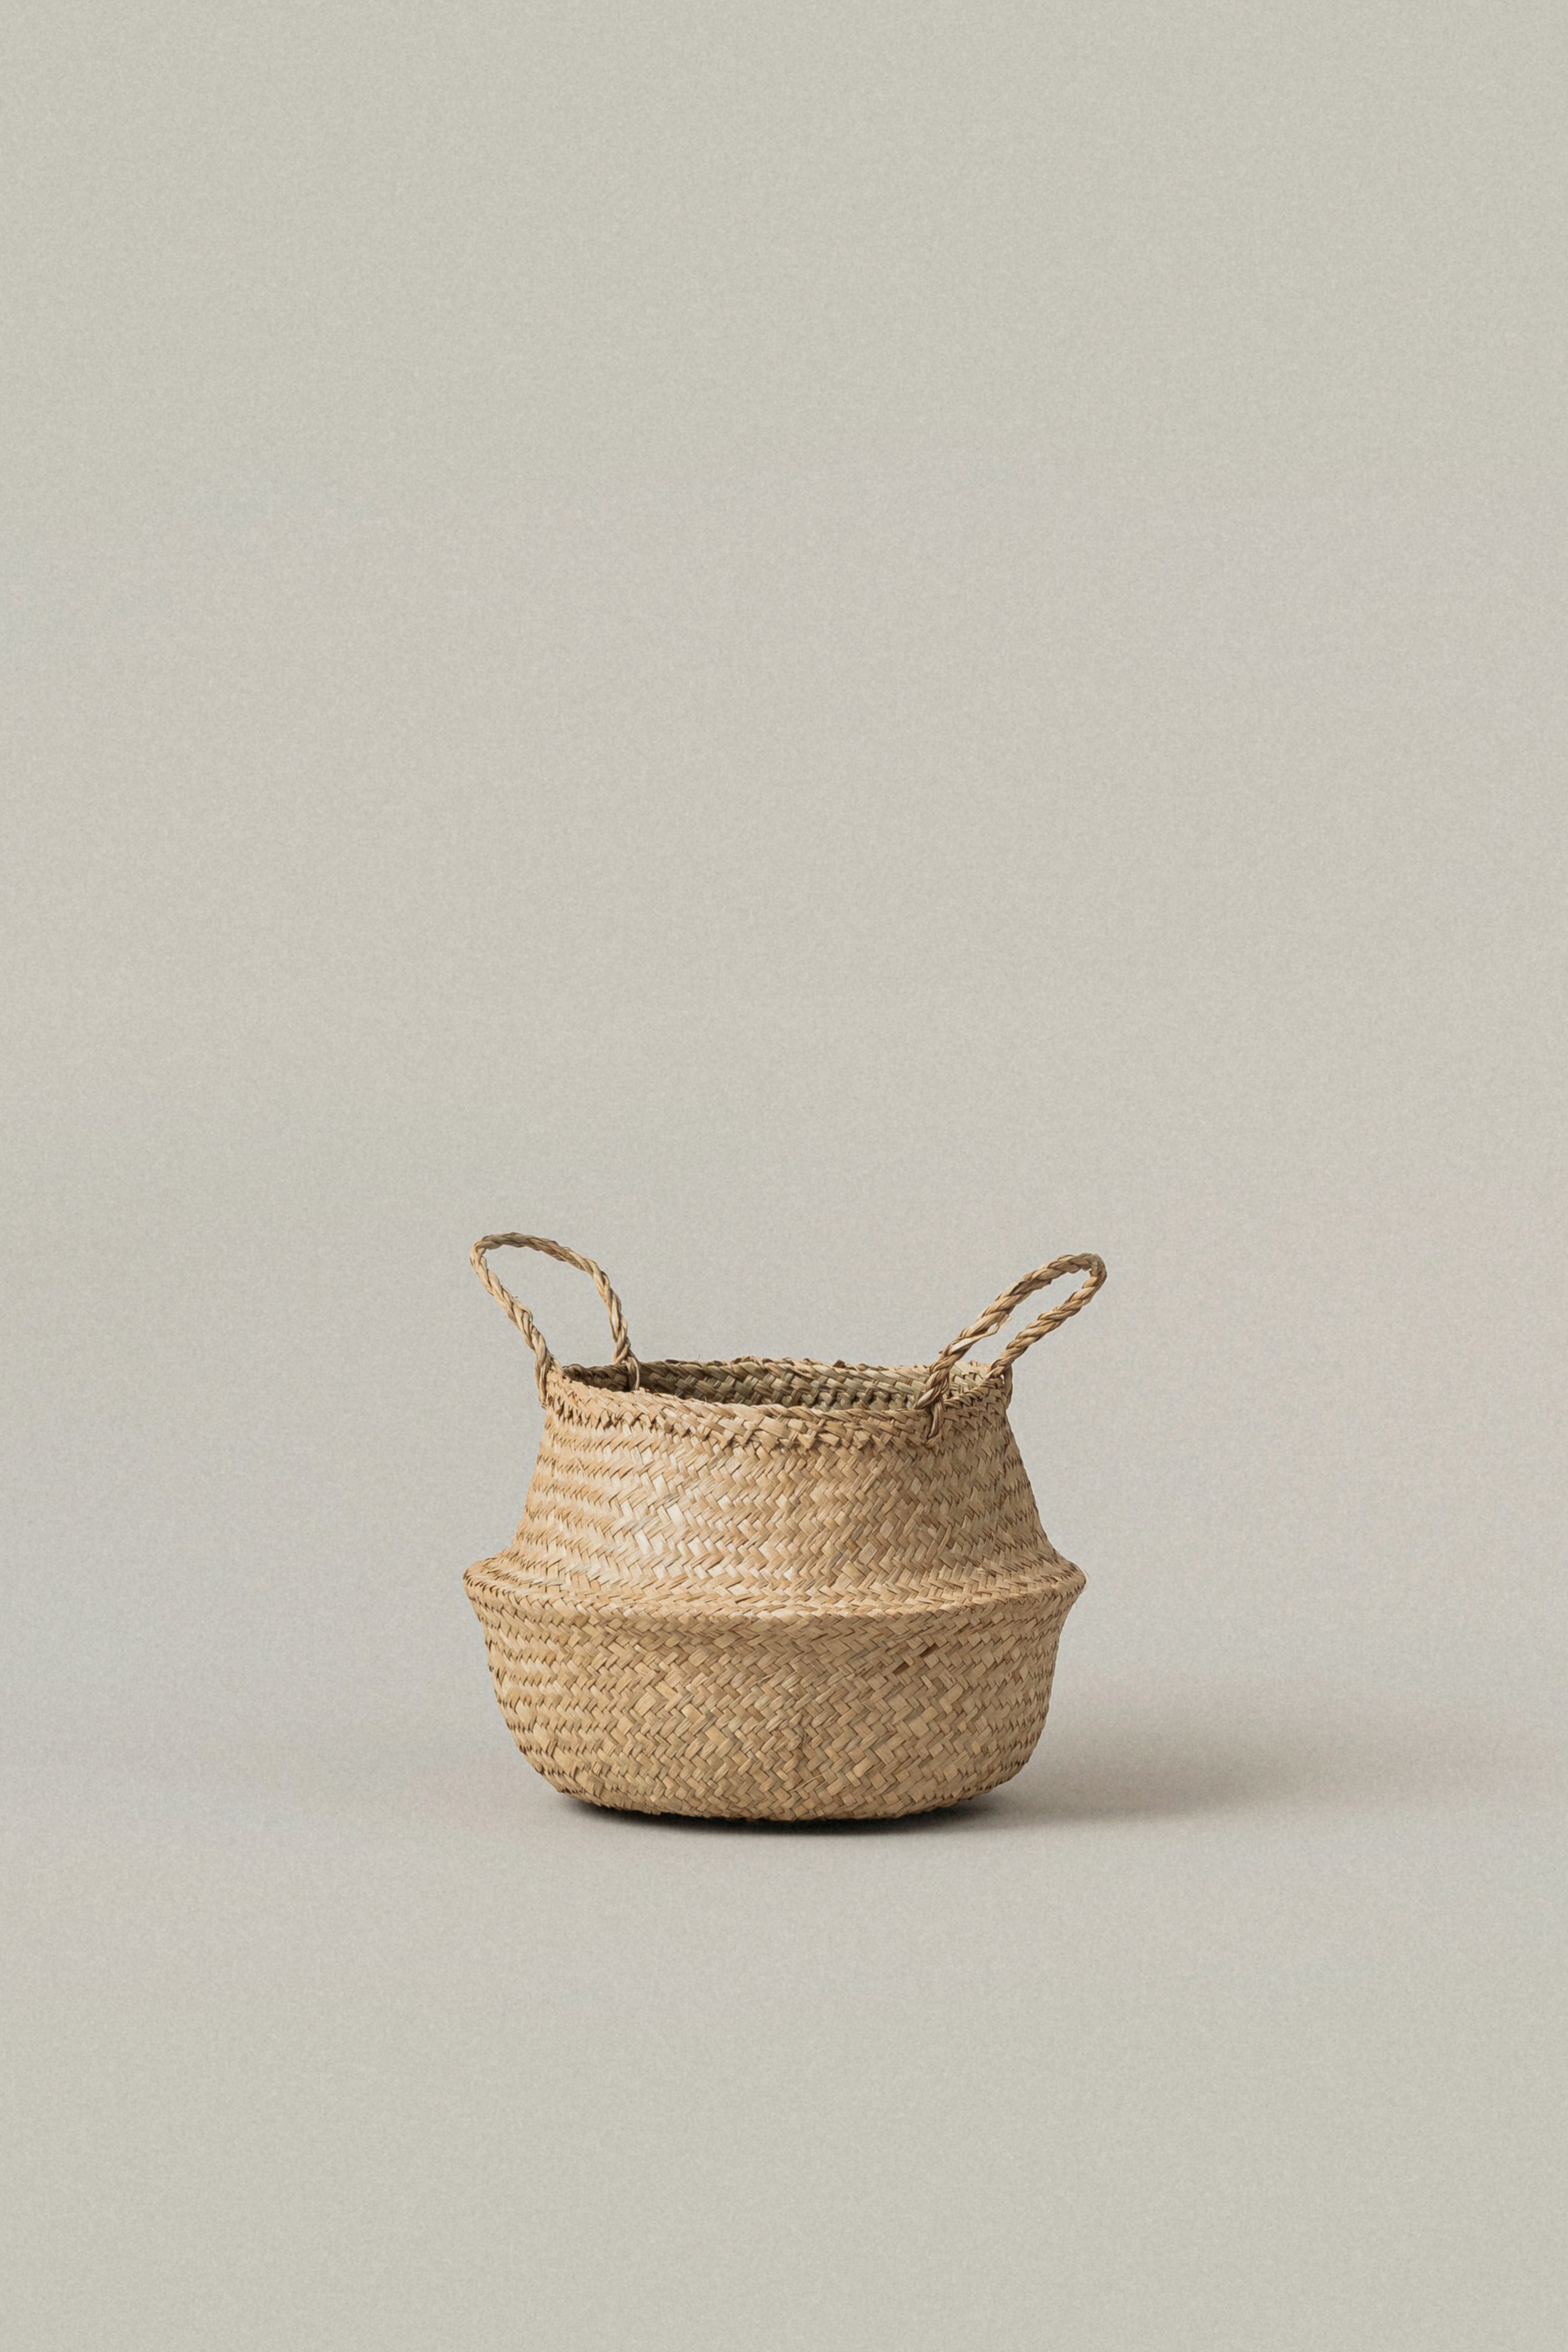 Kiau Foldable Seagrass Basket - Kiau Foldable Seagrass Basket